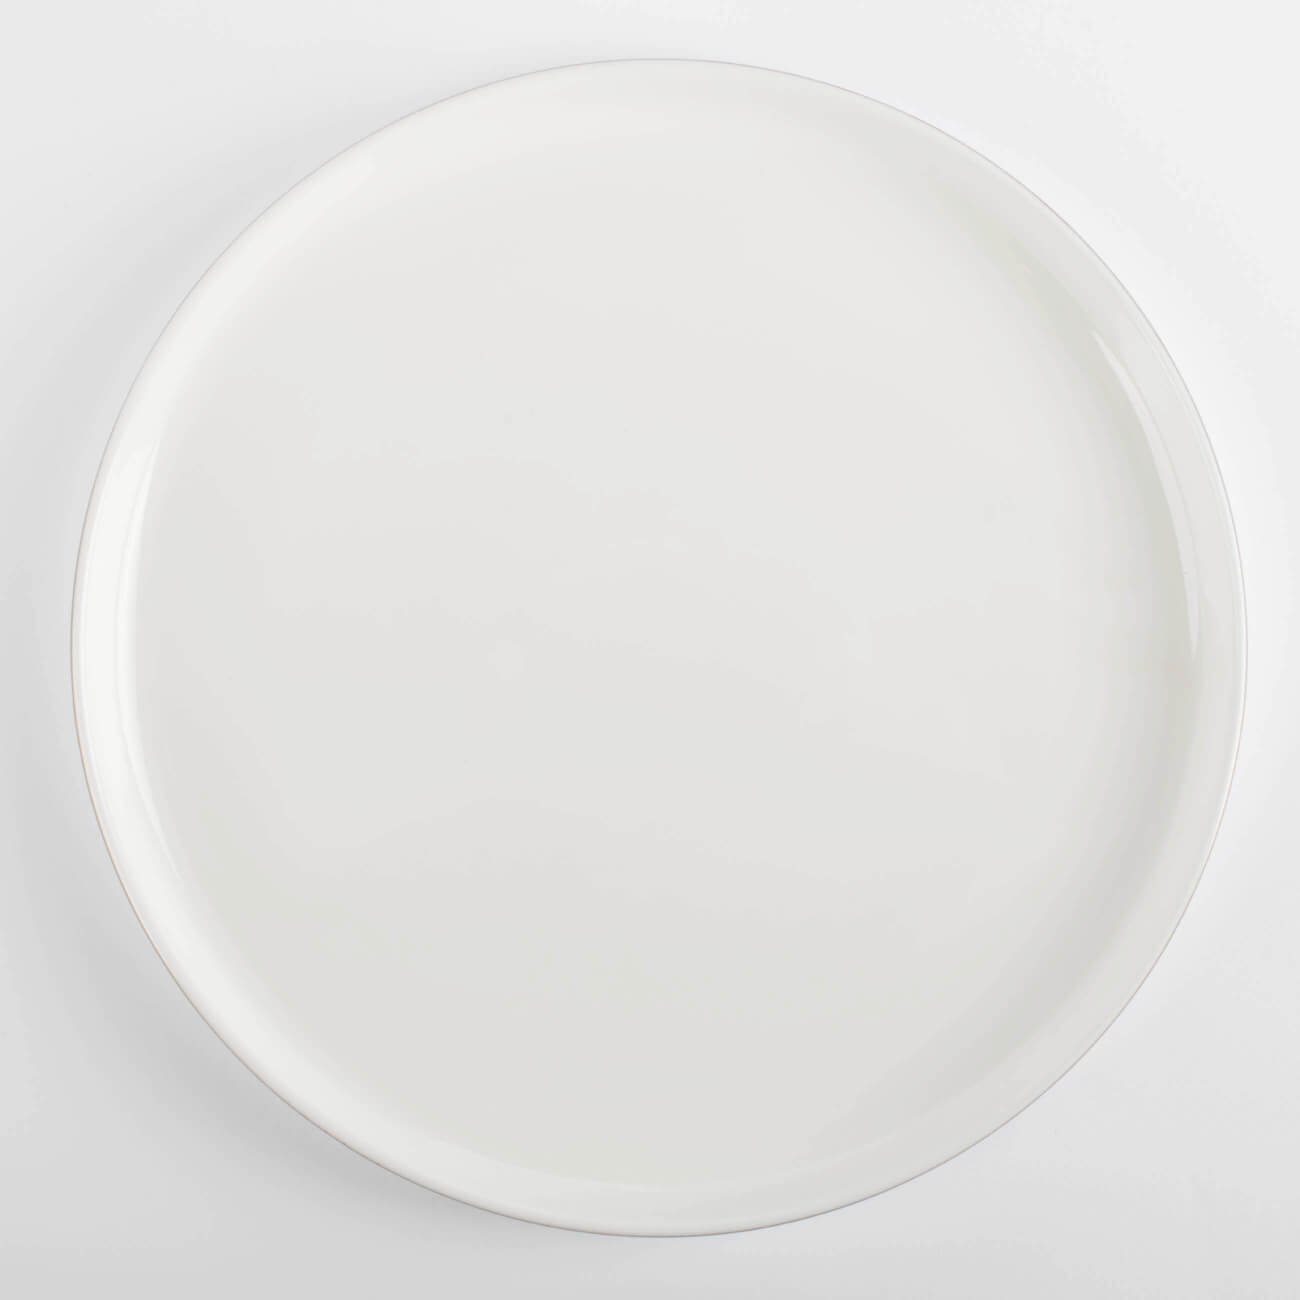 Тарелка обеденная, 26 см, фарфор F, белая, Ideal gold тарелка скандинавская veles рассвет над имладрис 24 см